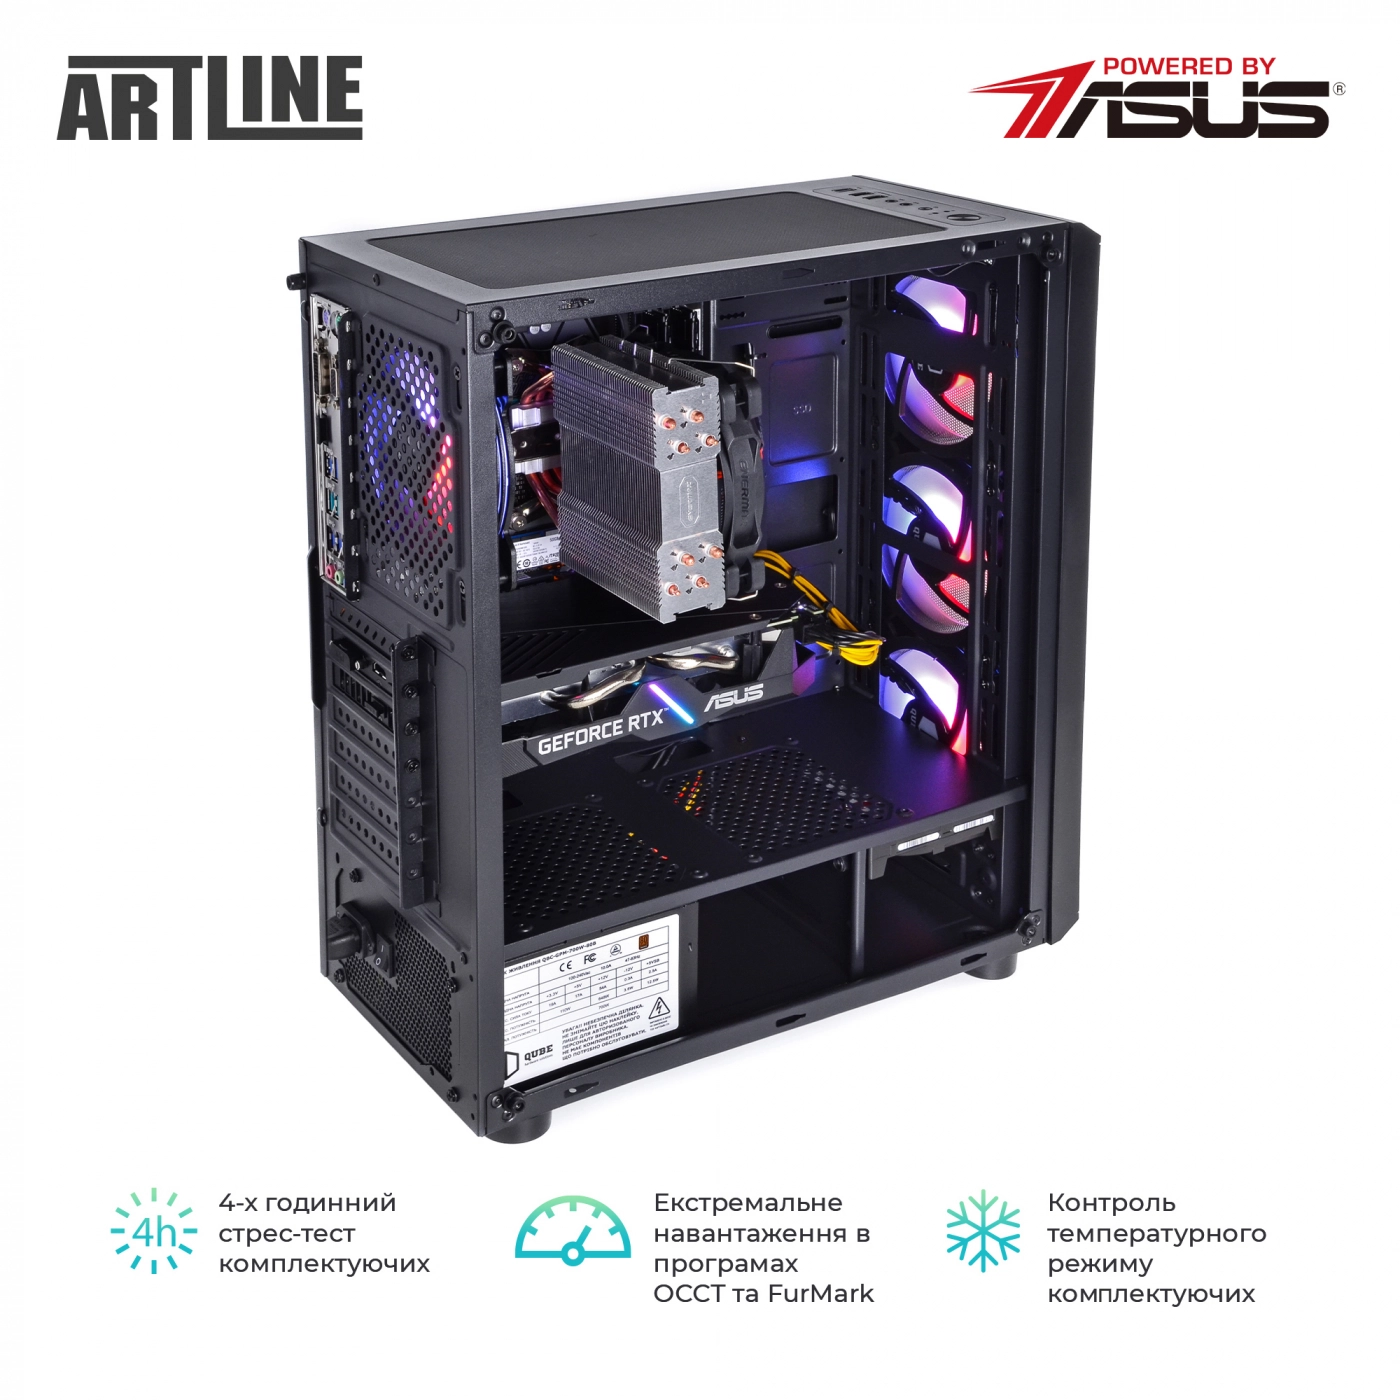 Купить Компьютер ARTLINE Gaming X77v59 - фото 9